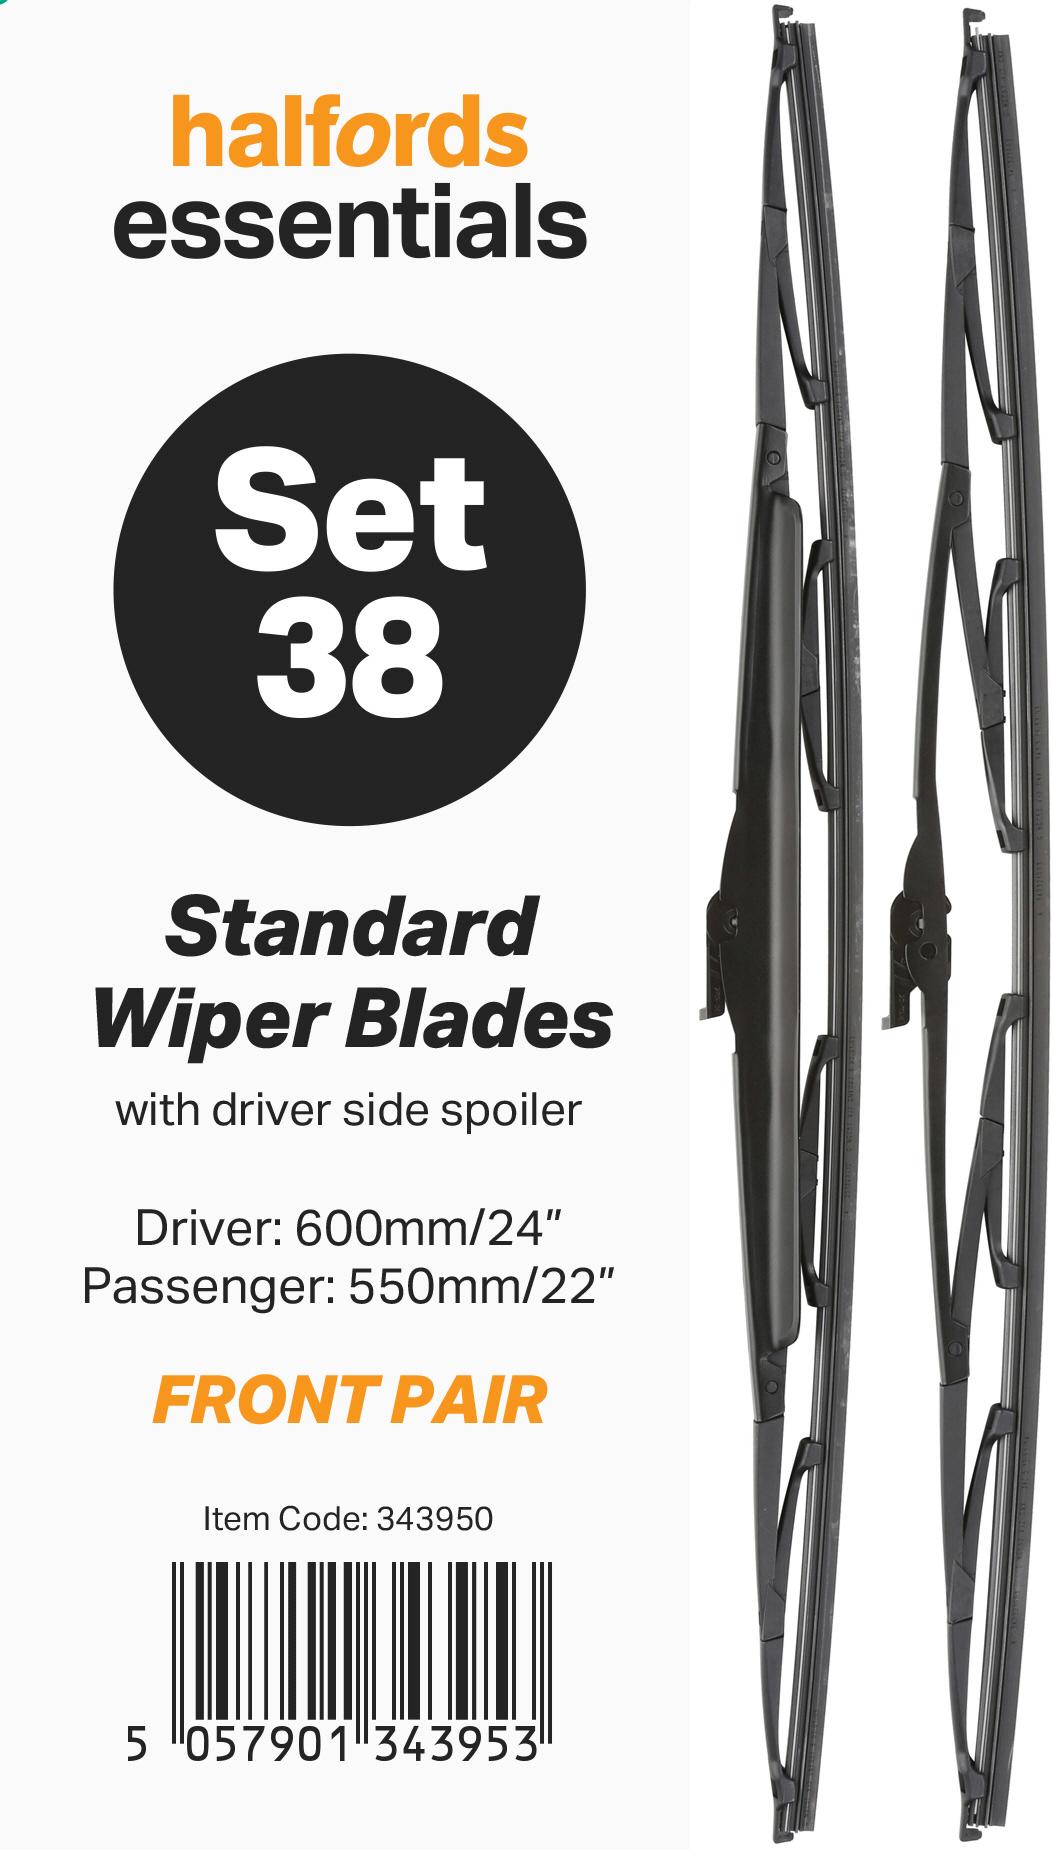 Halfords Essentials Wiper Blade Set 38